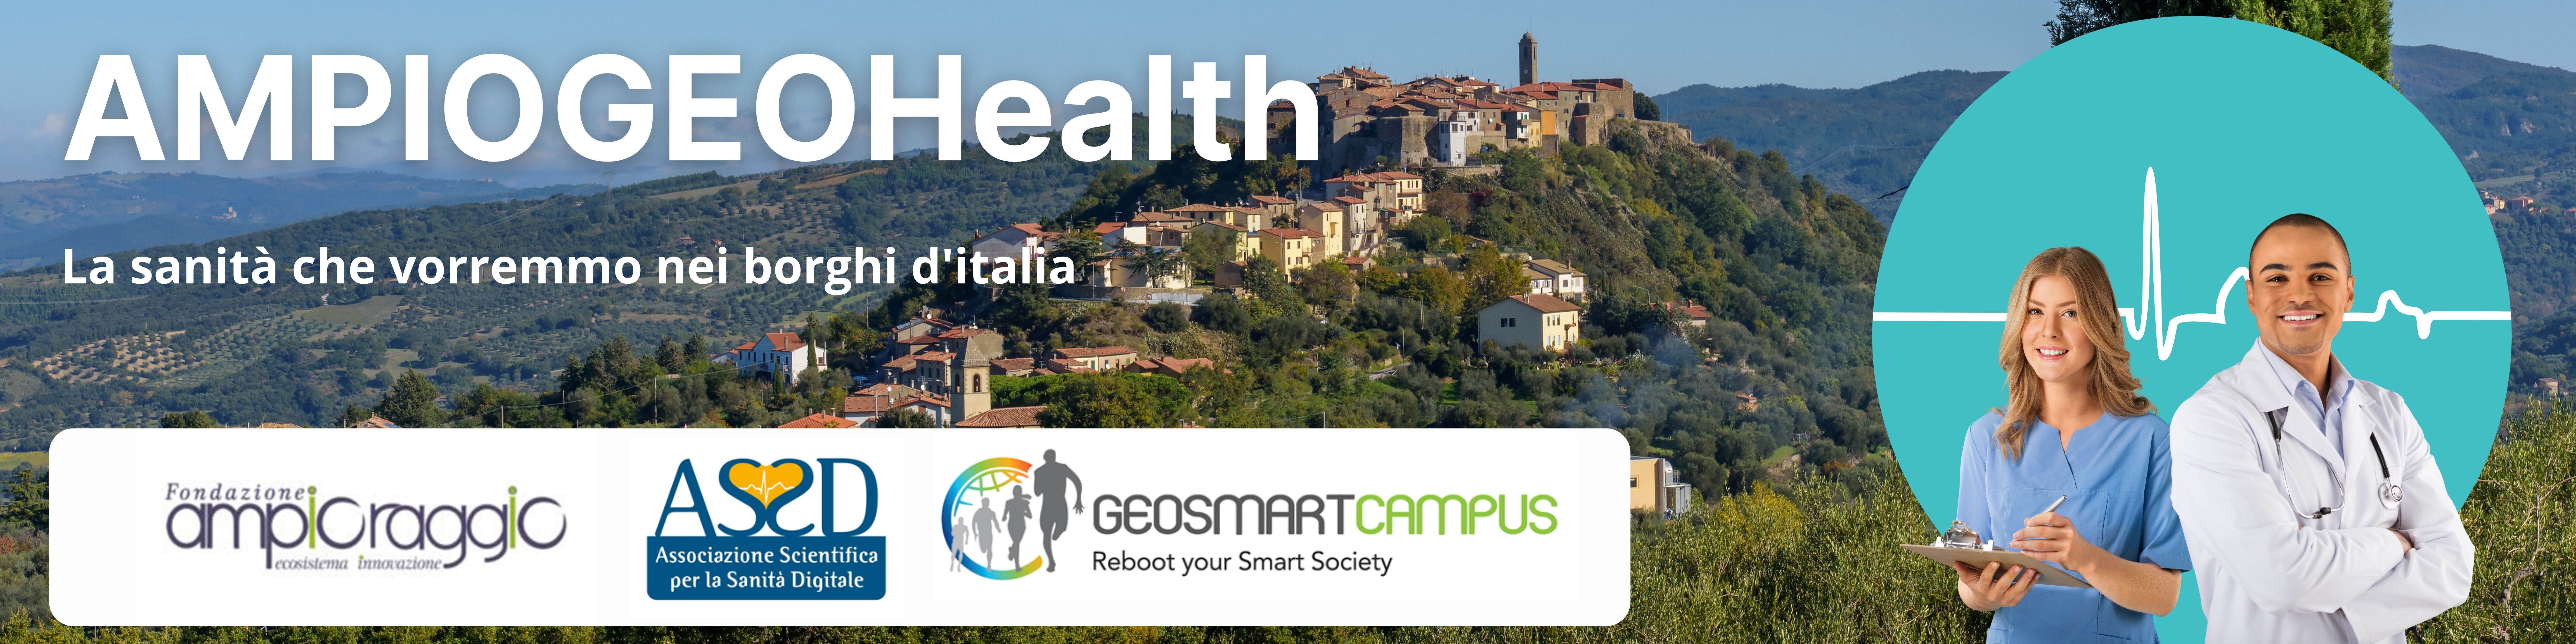 AMPIOGEOHealth, il progetto per la sanità digitale nei borghi d’Italia